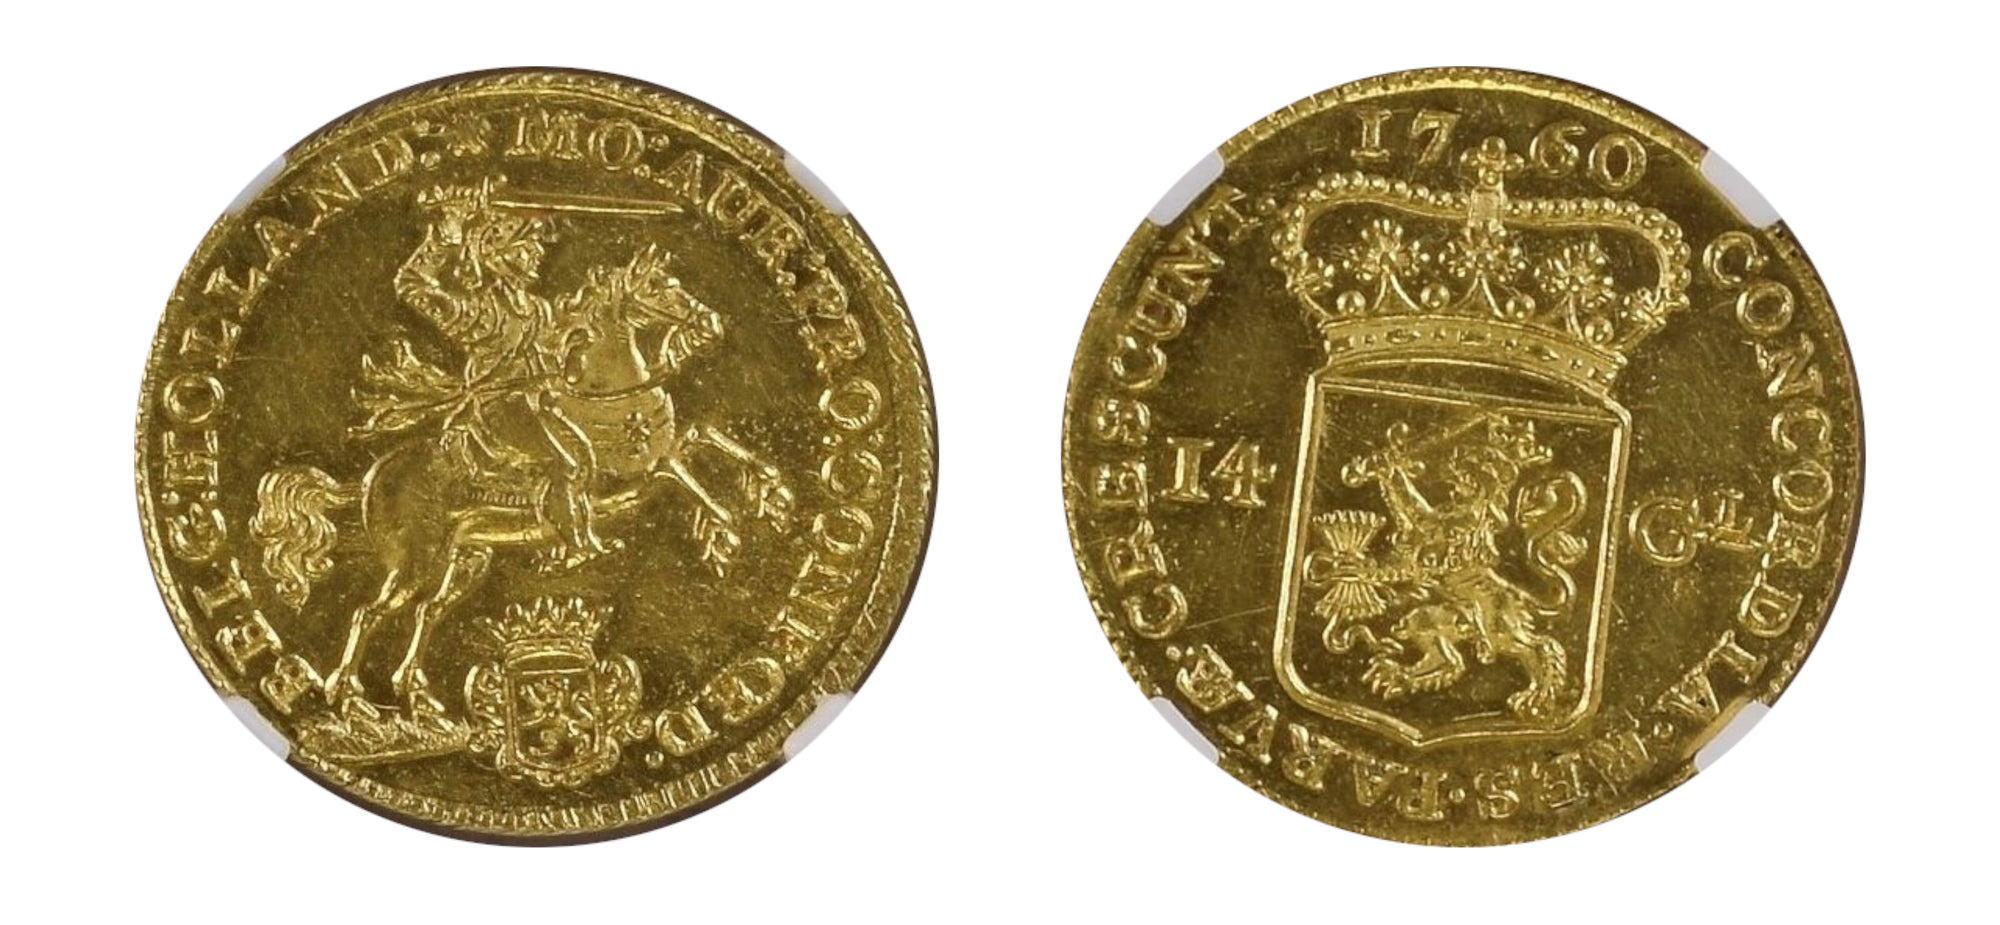 1760-Netherlands Gold 14 Gulden NGC MS 62 LM - Hard Asset Management, Inc